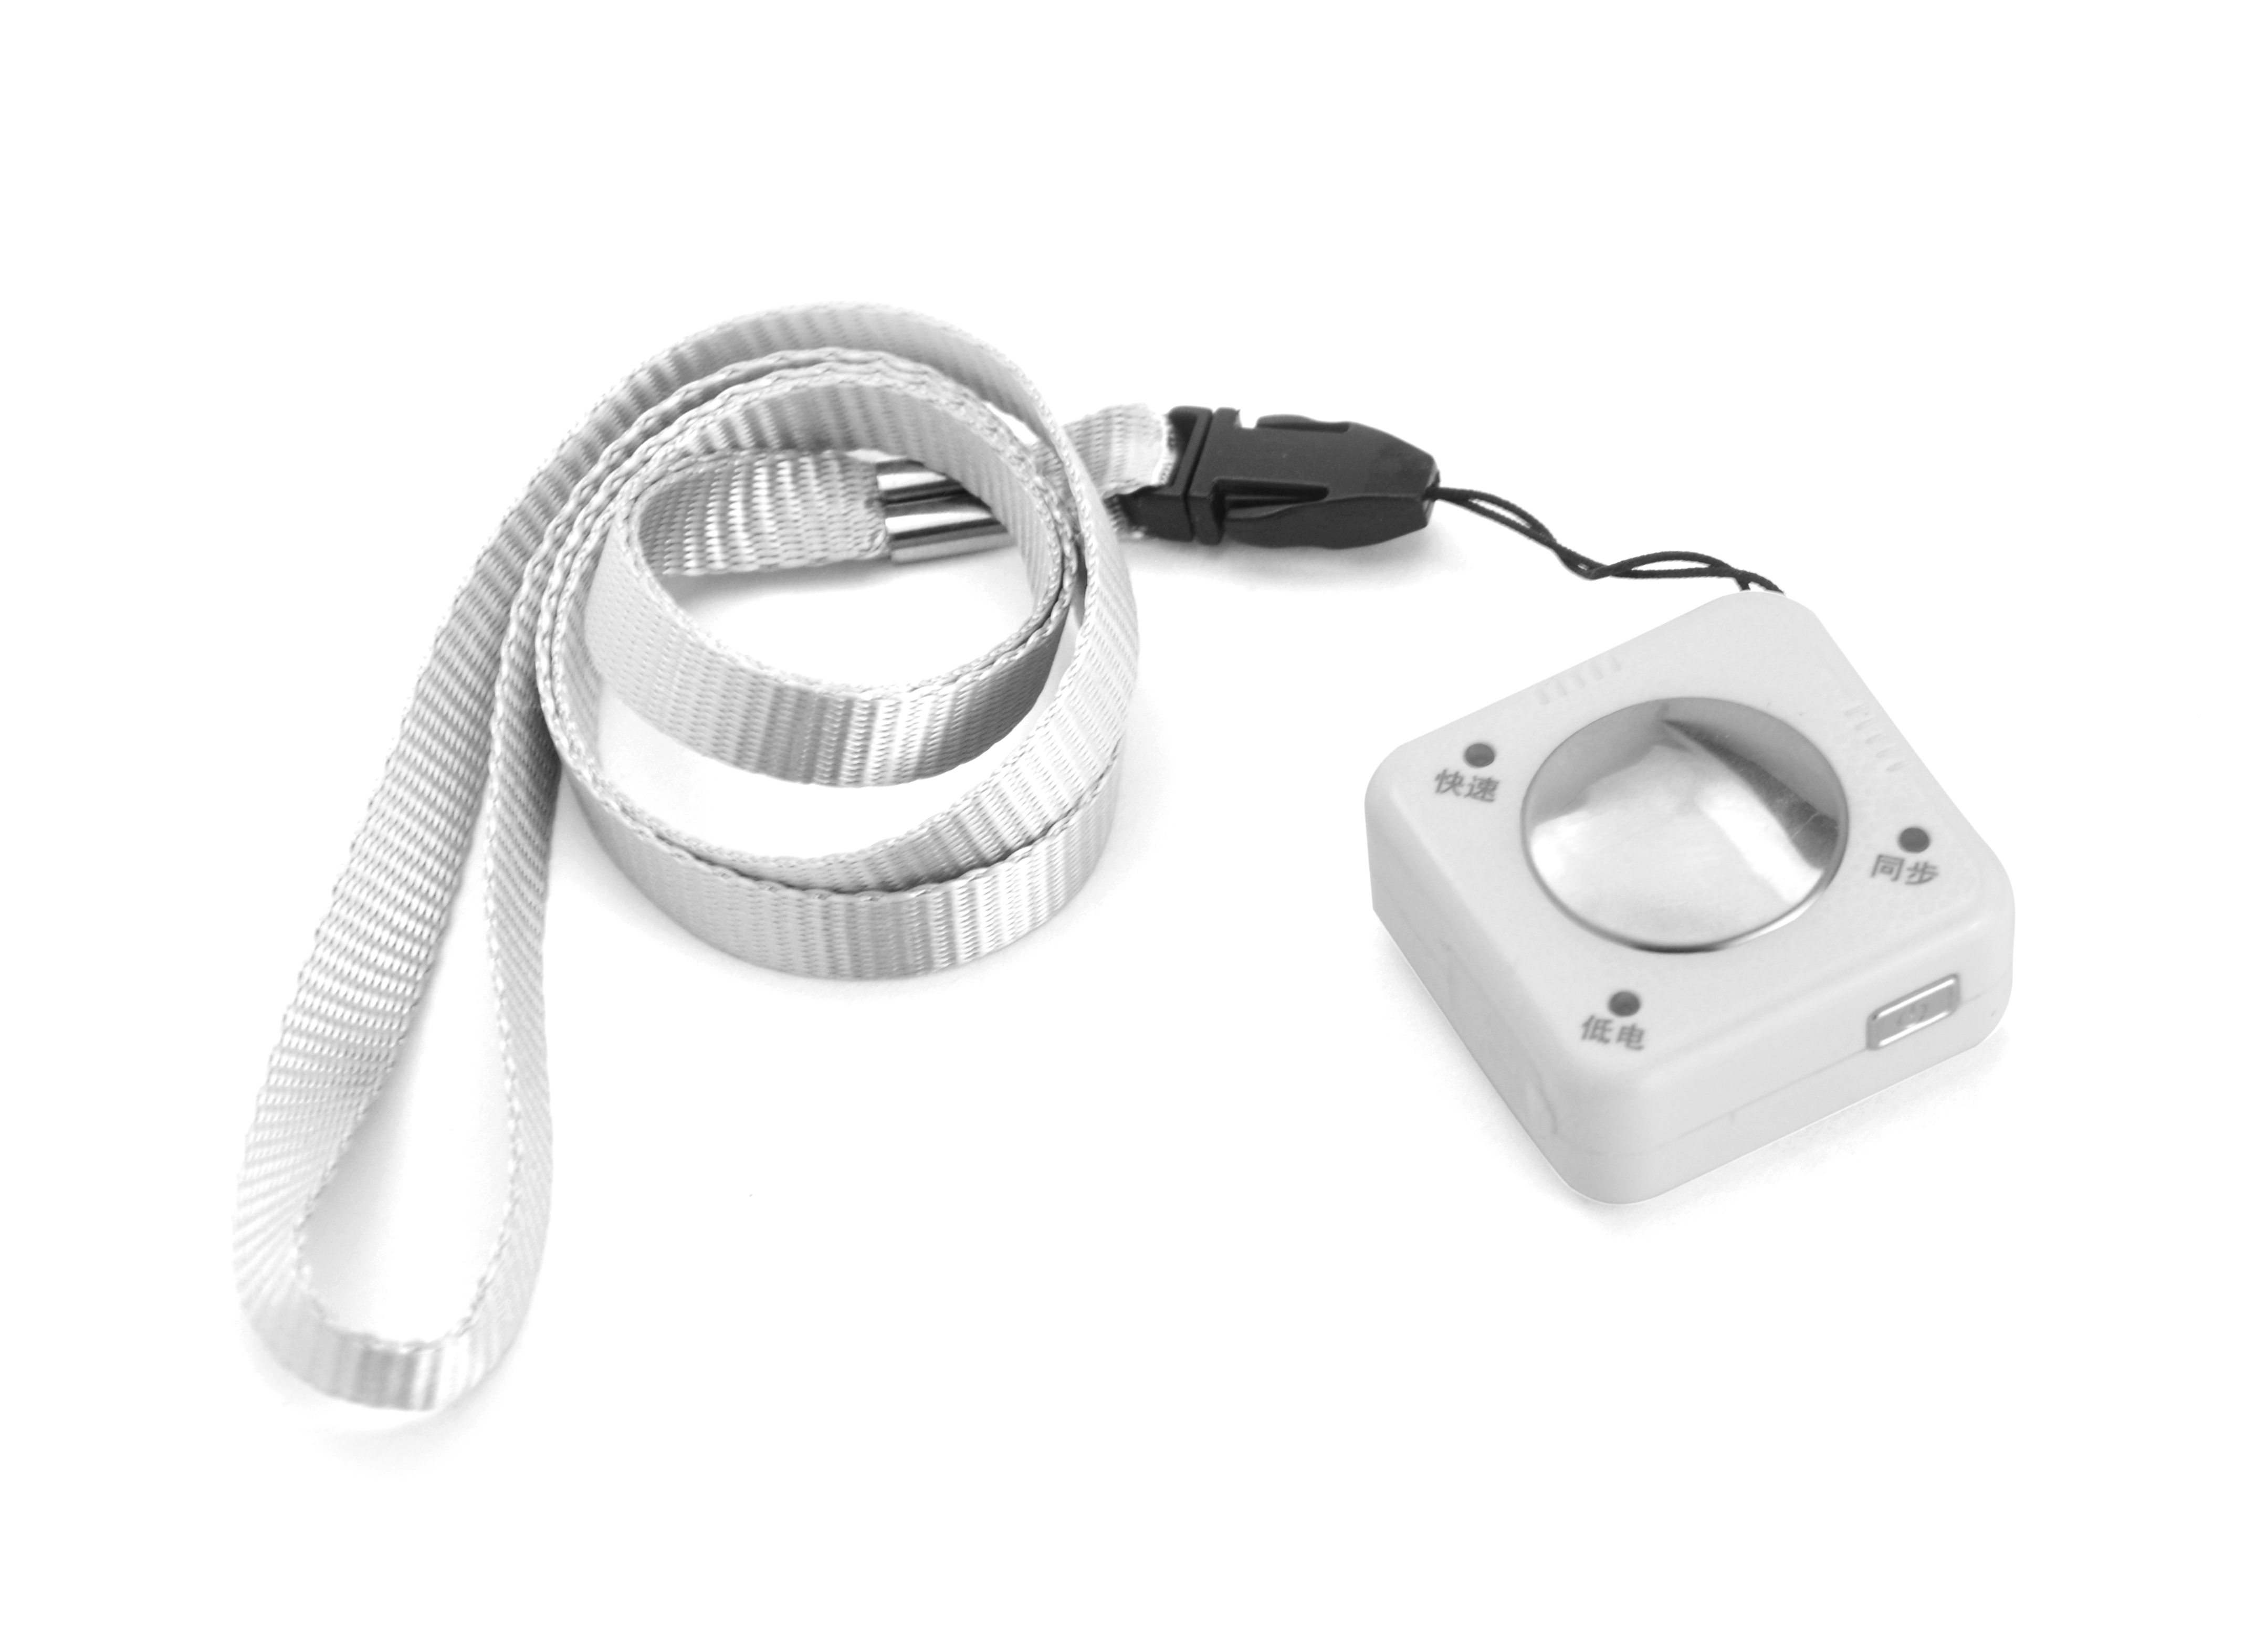 厂家直销心电检测仪ECG01010102，用着安心，家人放心 厂家直销心电检测仪ECG1010